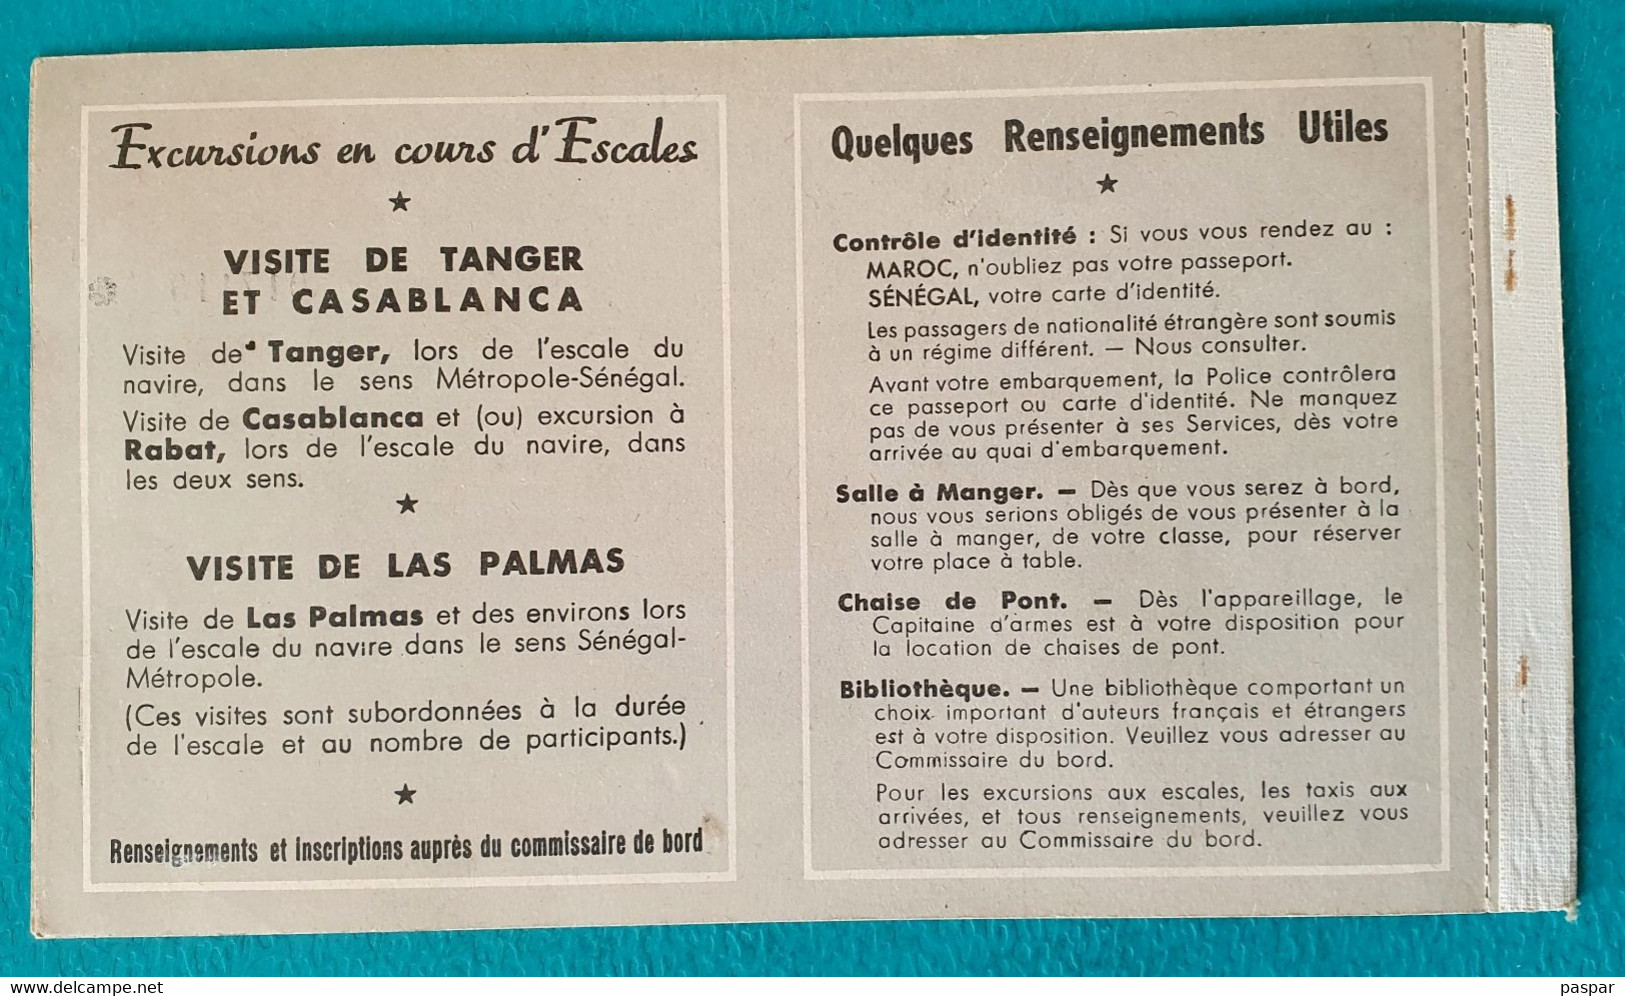 COMPAGNIE DE NAVIGATION PAQUET - BILLET DE PASSAGE ALLER SIMPLE DAKAR MARSEILLE 1ere CLASSE SENEGAL - 1956 - Monde